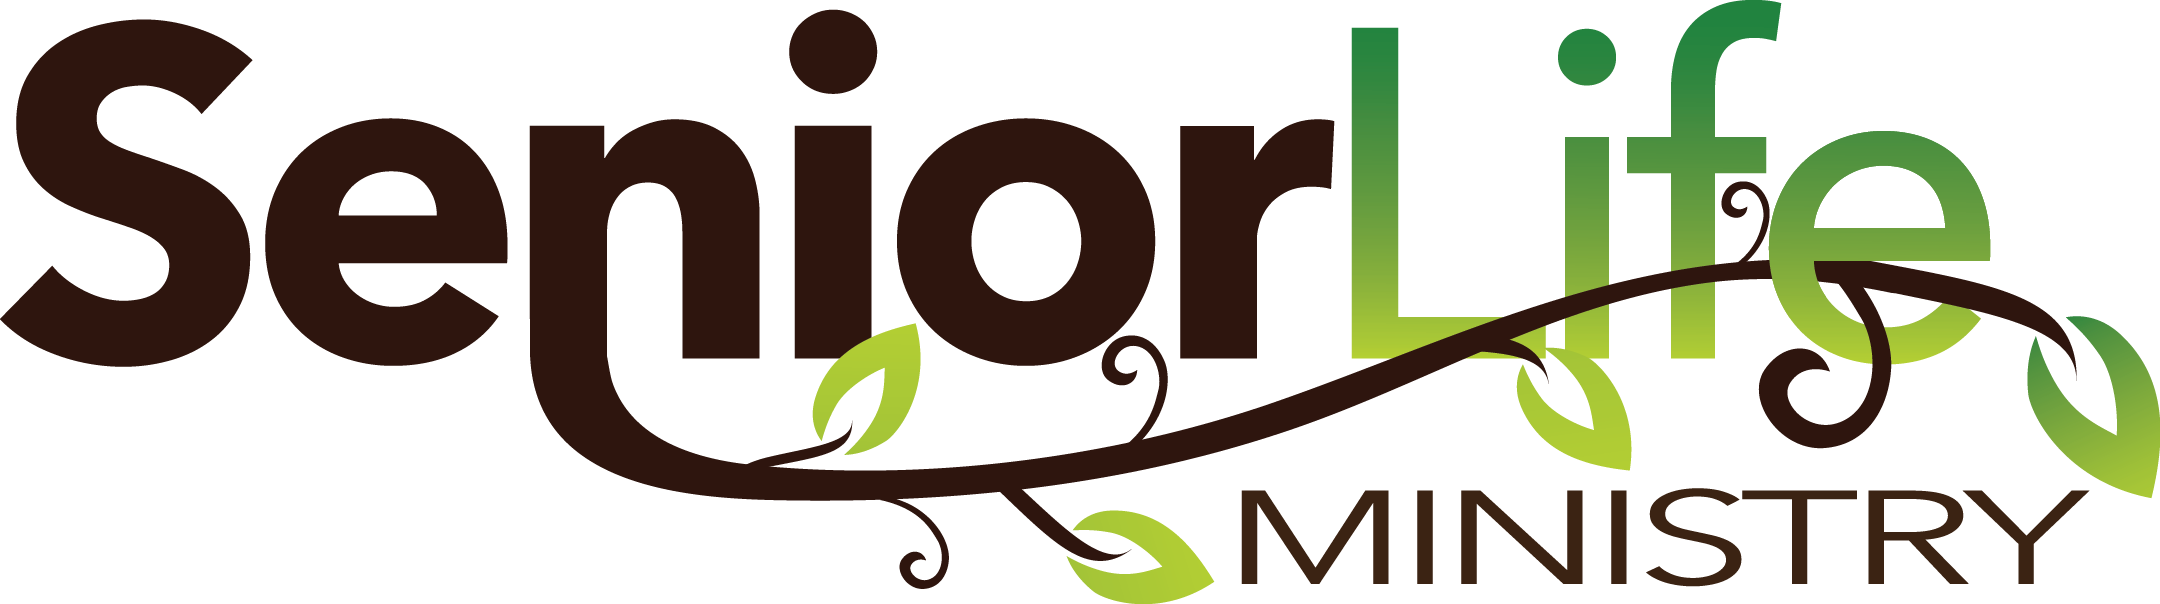 Senior Life Ministry Logo - Senior Life Ministry (2160x604)